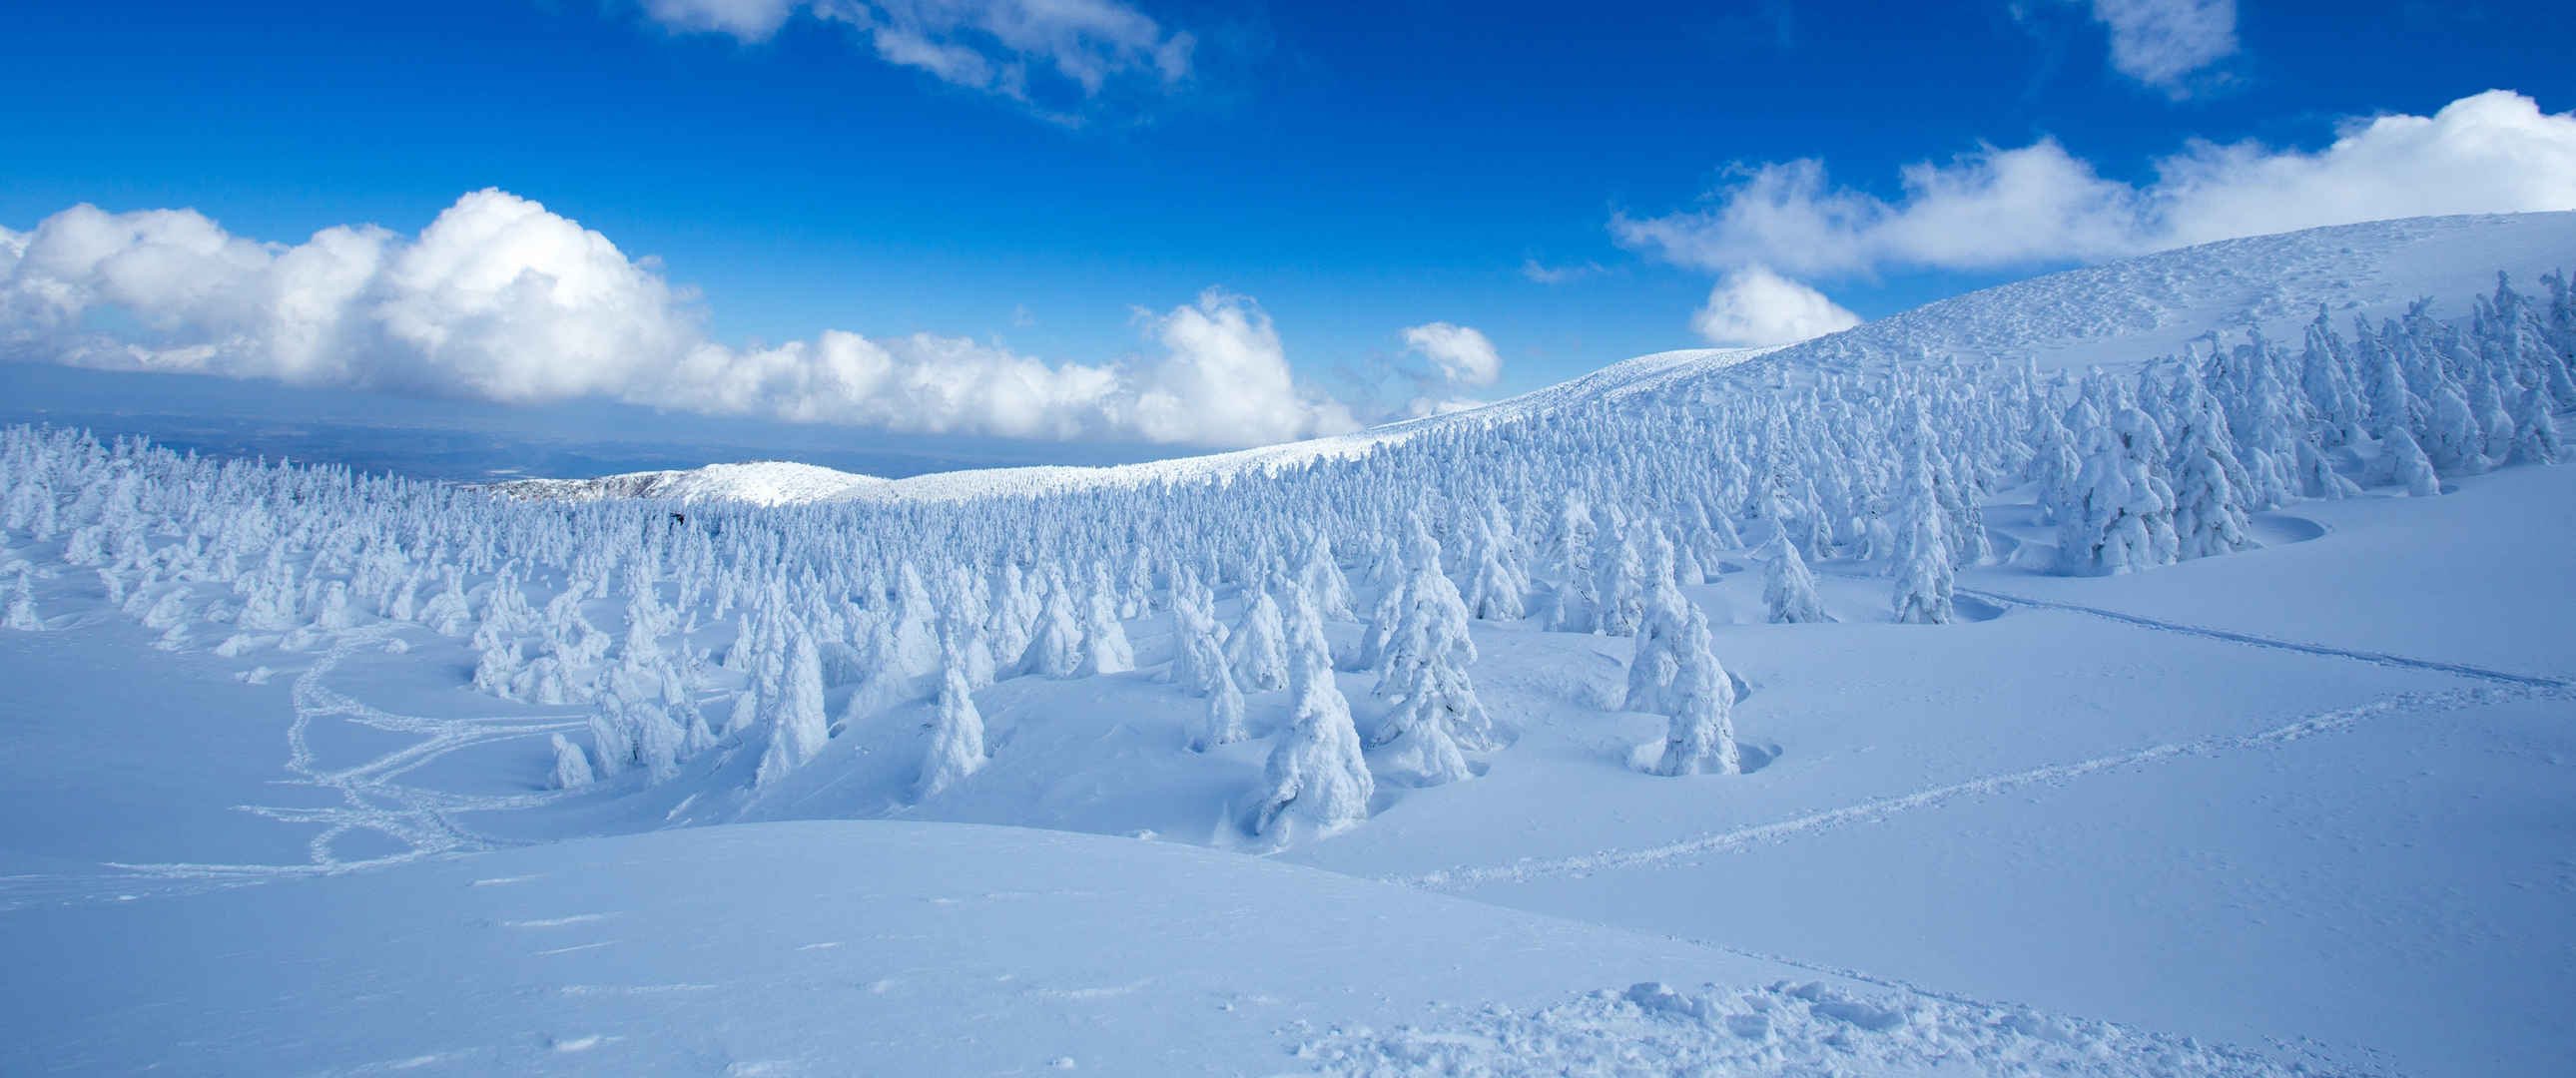 冬天蓝天雪景ins潮图壁纸风景